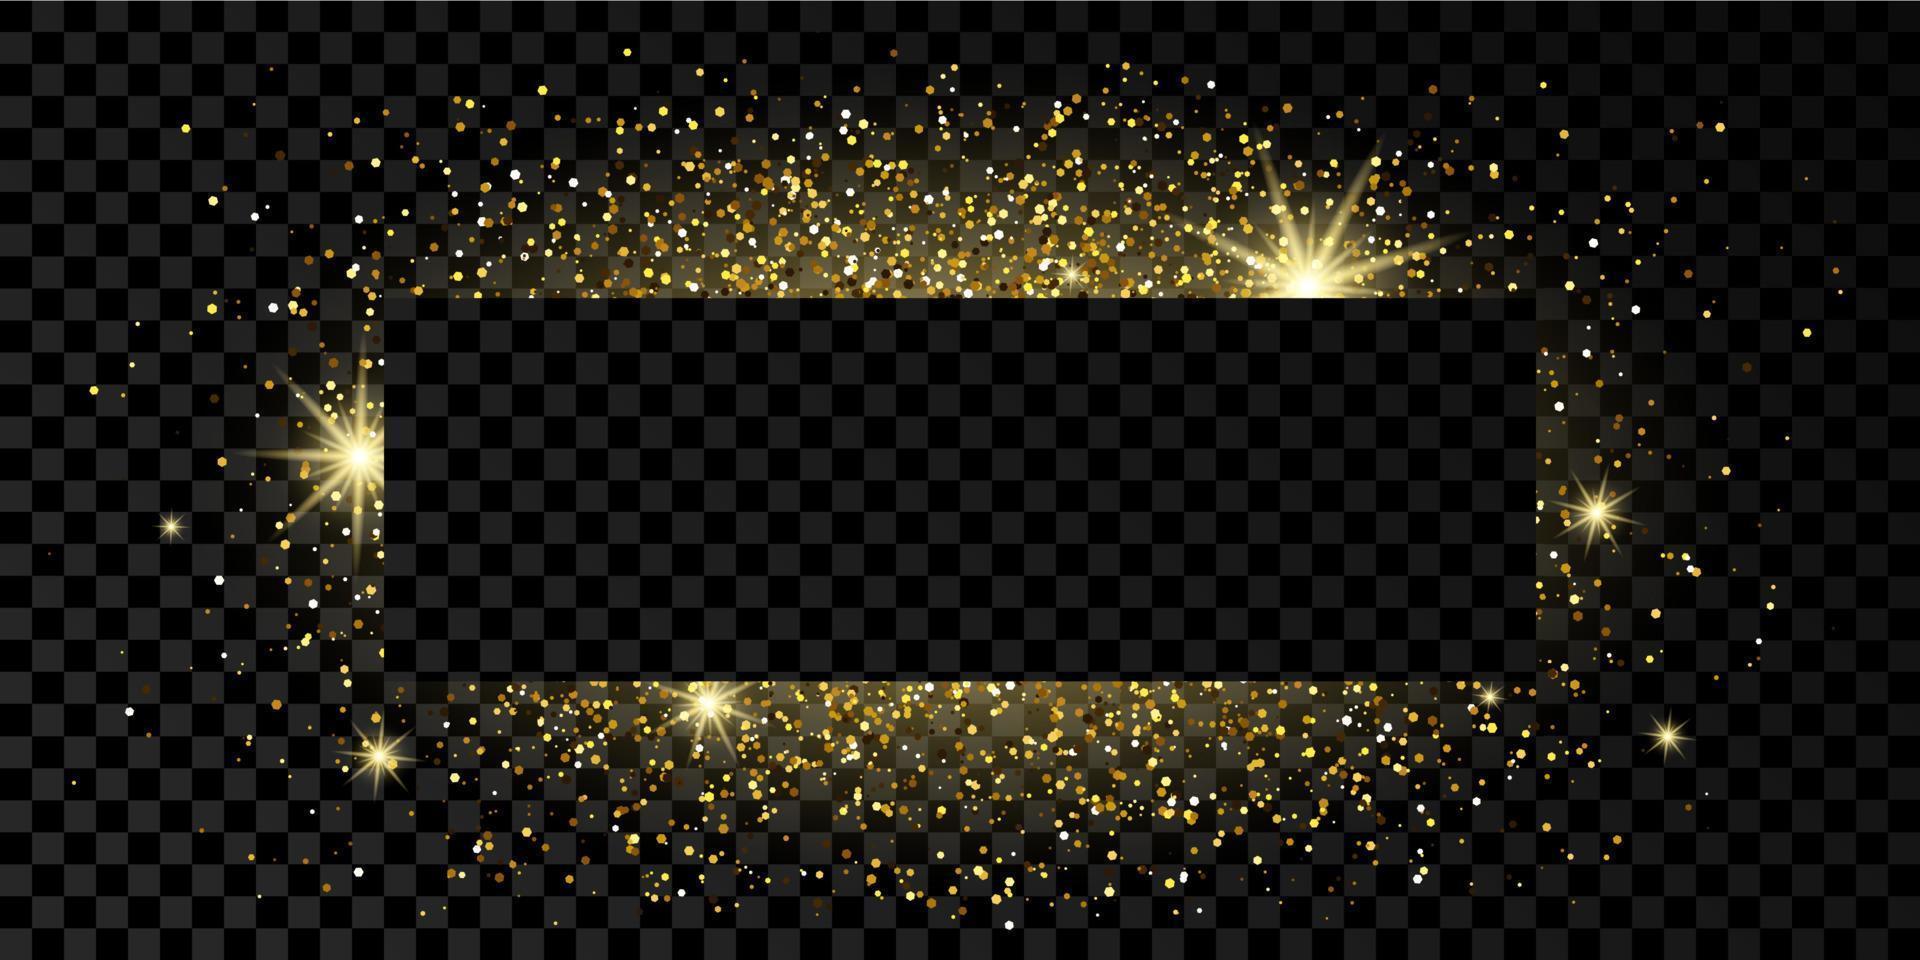 marco de rectángulo dorado con brillo, destellos y bengalas sobre fondo transparente oscuro. telón de fondo de lujo vacío. ilustración vectorial vector